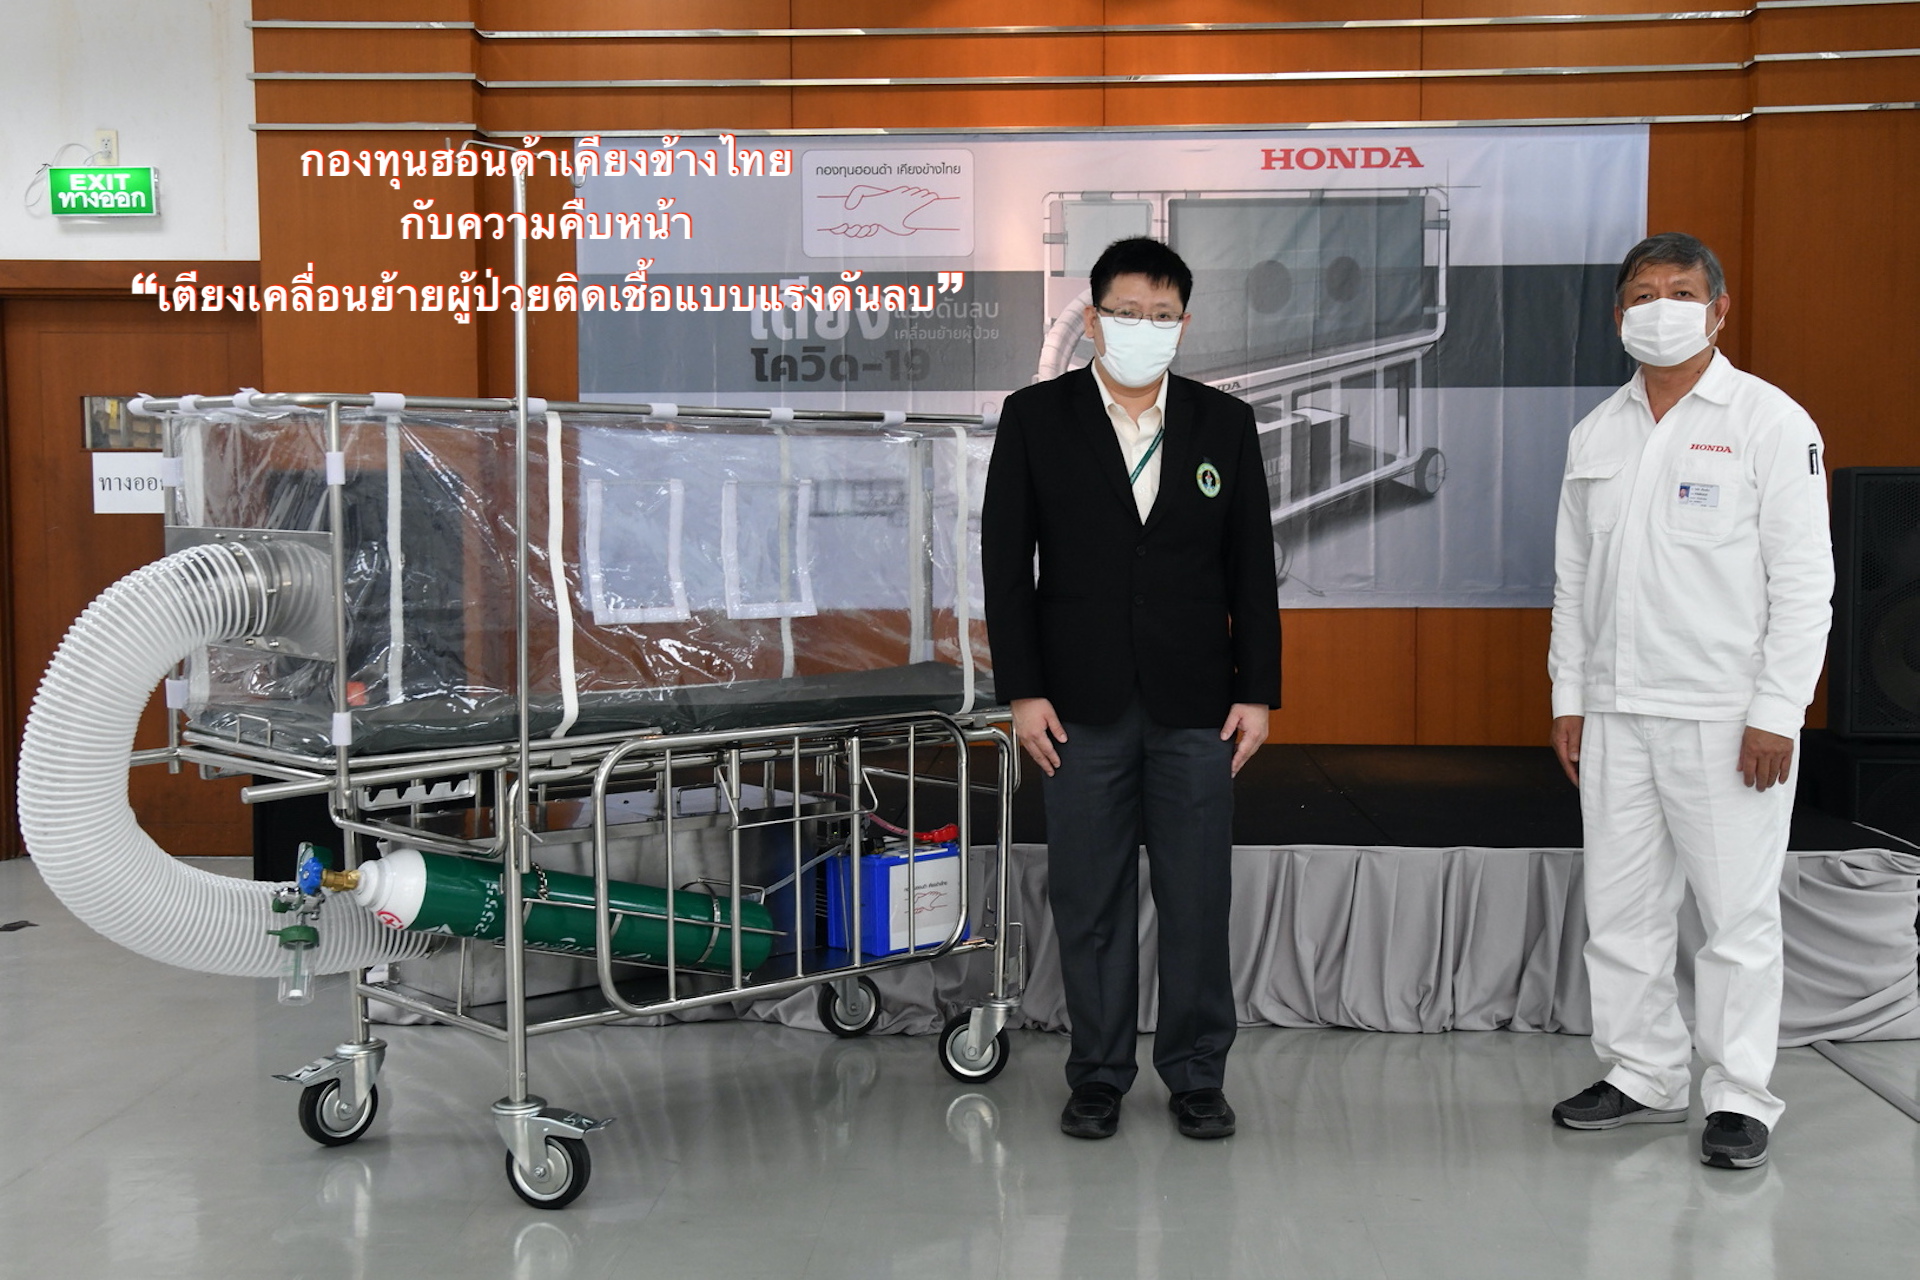 “กองทุนฮอนด้าเคียงข้างไทย” กับความคืบหน้า “เตียงเคลื่อนย้ายผู้ป่วยติดเชื้อแบบแรงดันลบ”  พร้อมประกาศให้การสนับสนุนบริการรถจักรยานยนต์พยาบาลฮอนด้าเพิ่มเติมอีก 10 คัน  เพื่อต้านภัยโควิด-19